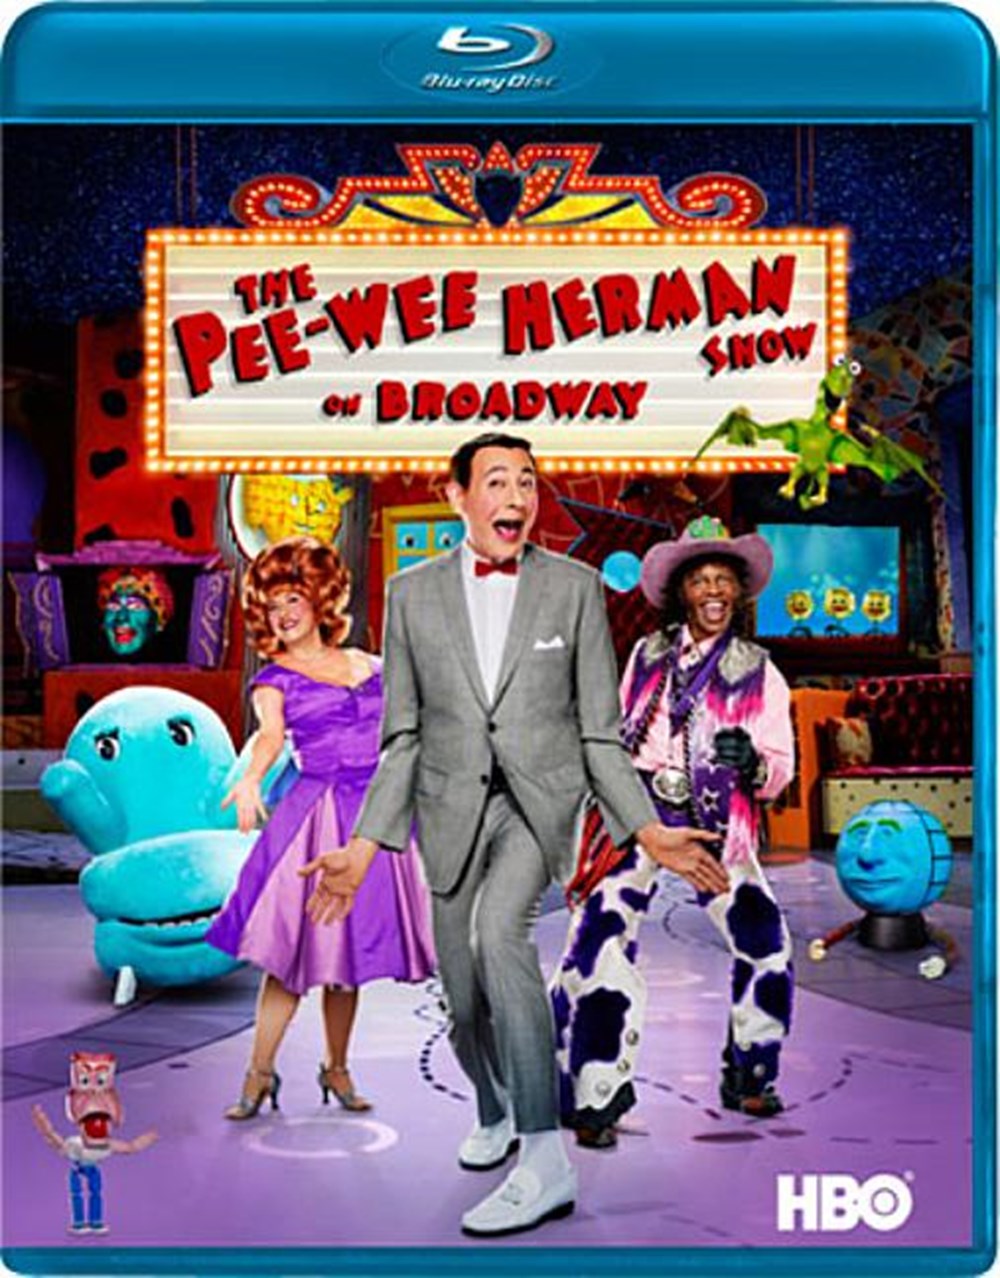 Pee-Wee Herman Show on Broadway